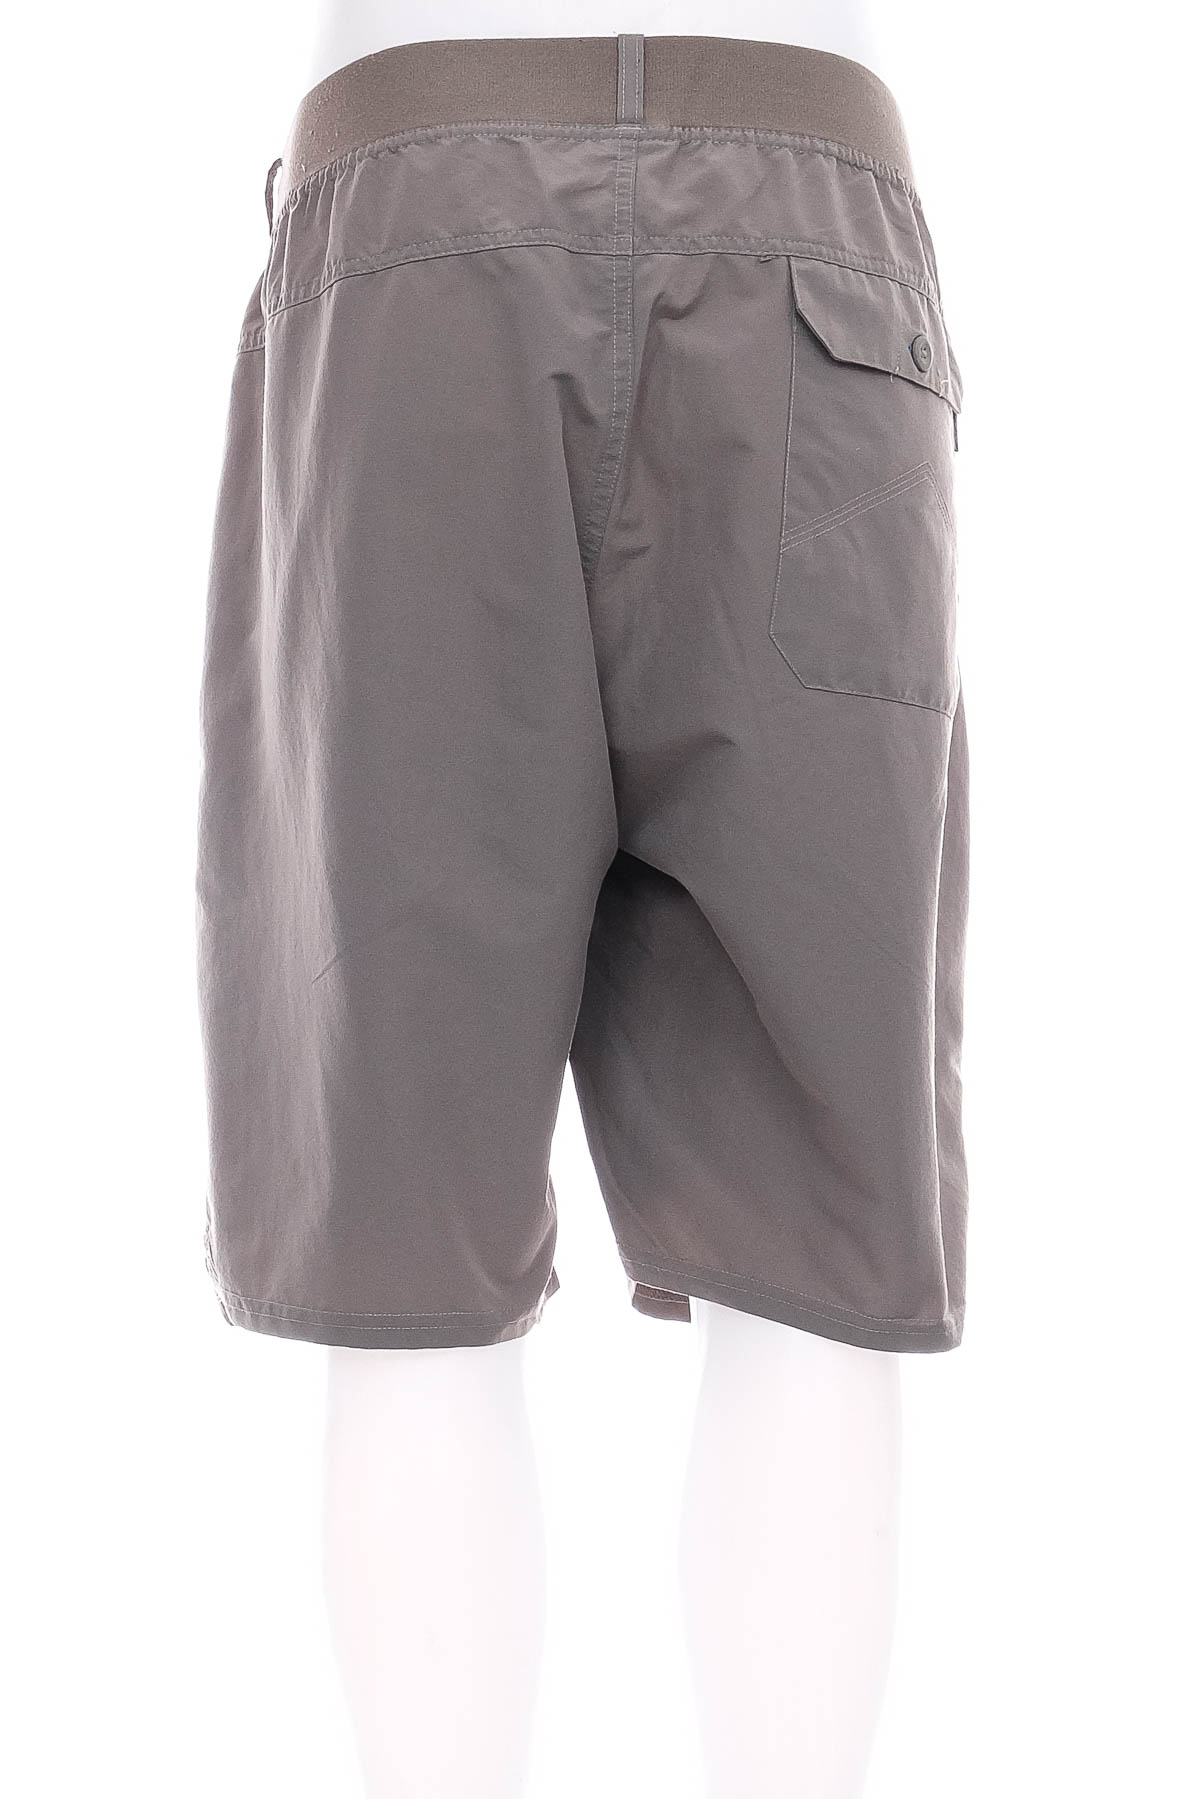 Men's shorts - Quechua - 1